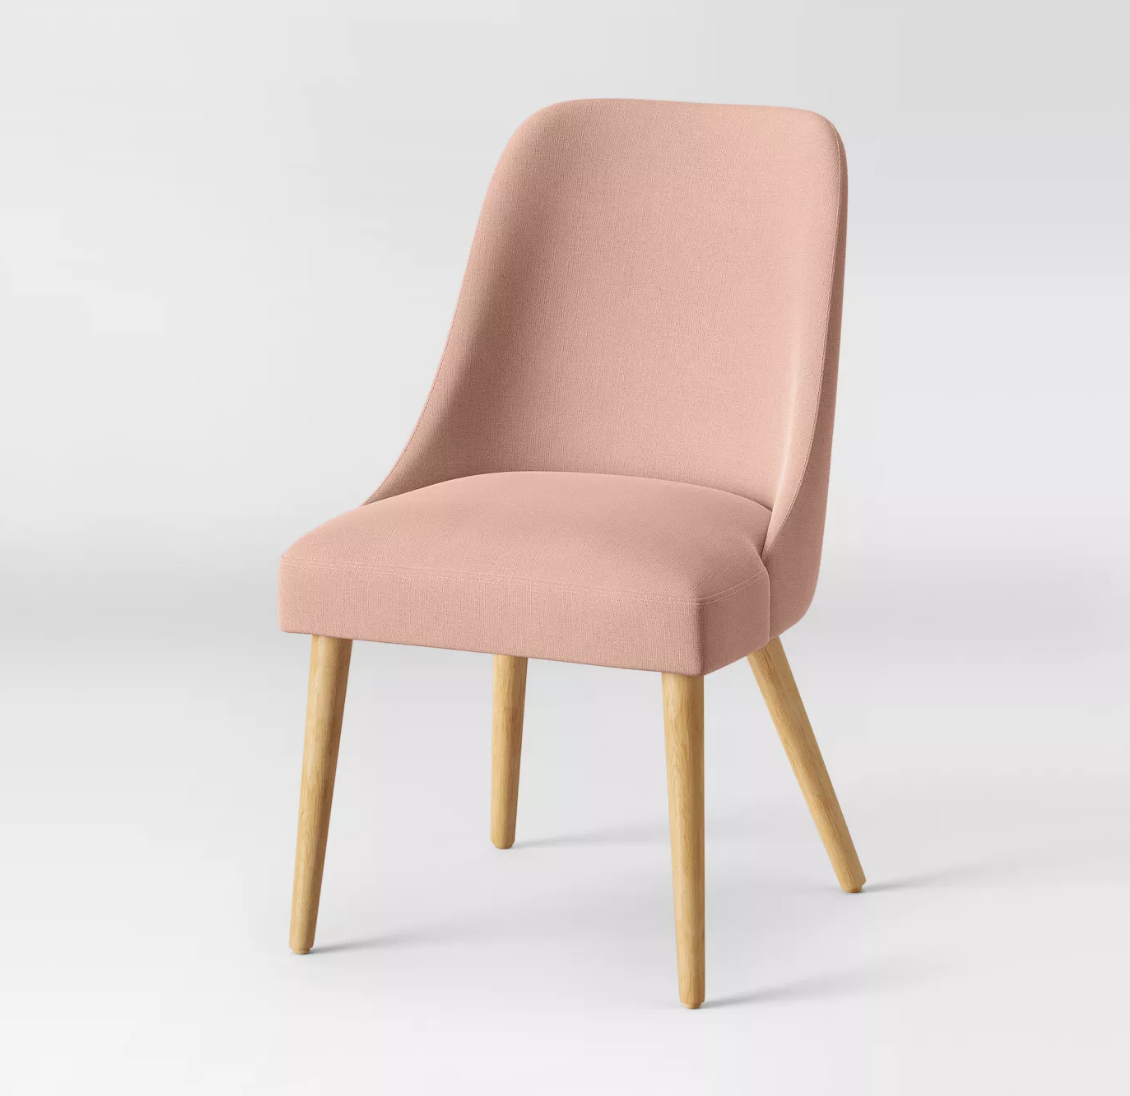 Target - Geller Modern Dining Chair - $120